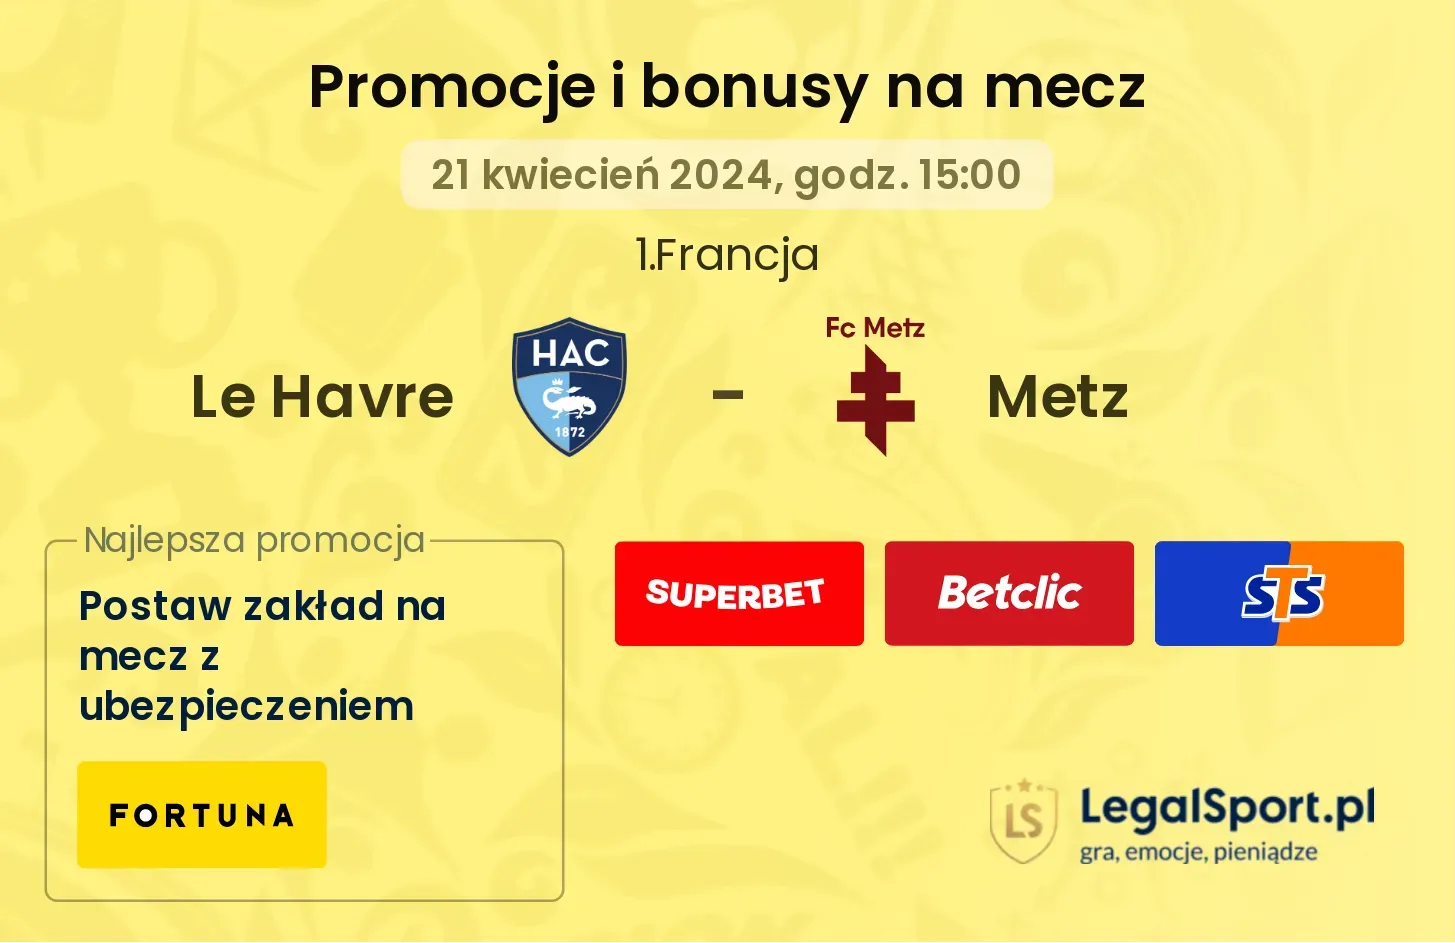 Le Havre - Metz promocje bonusy na mecz